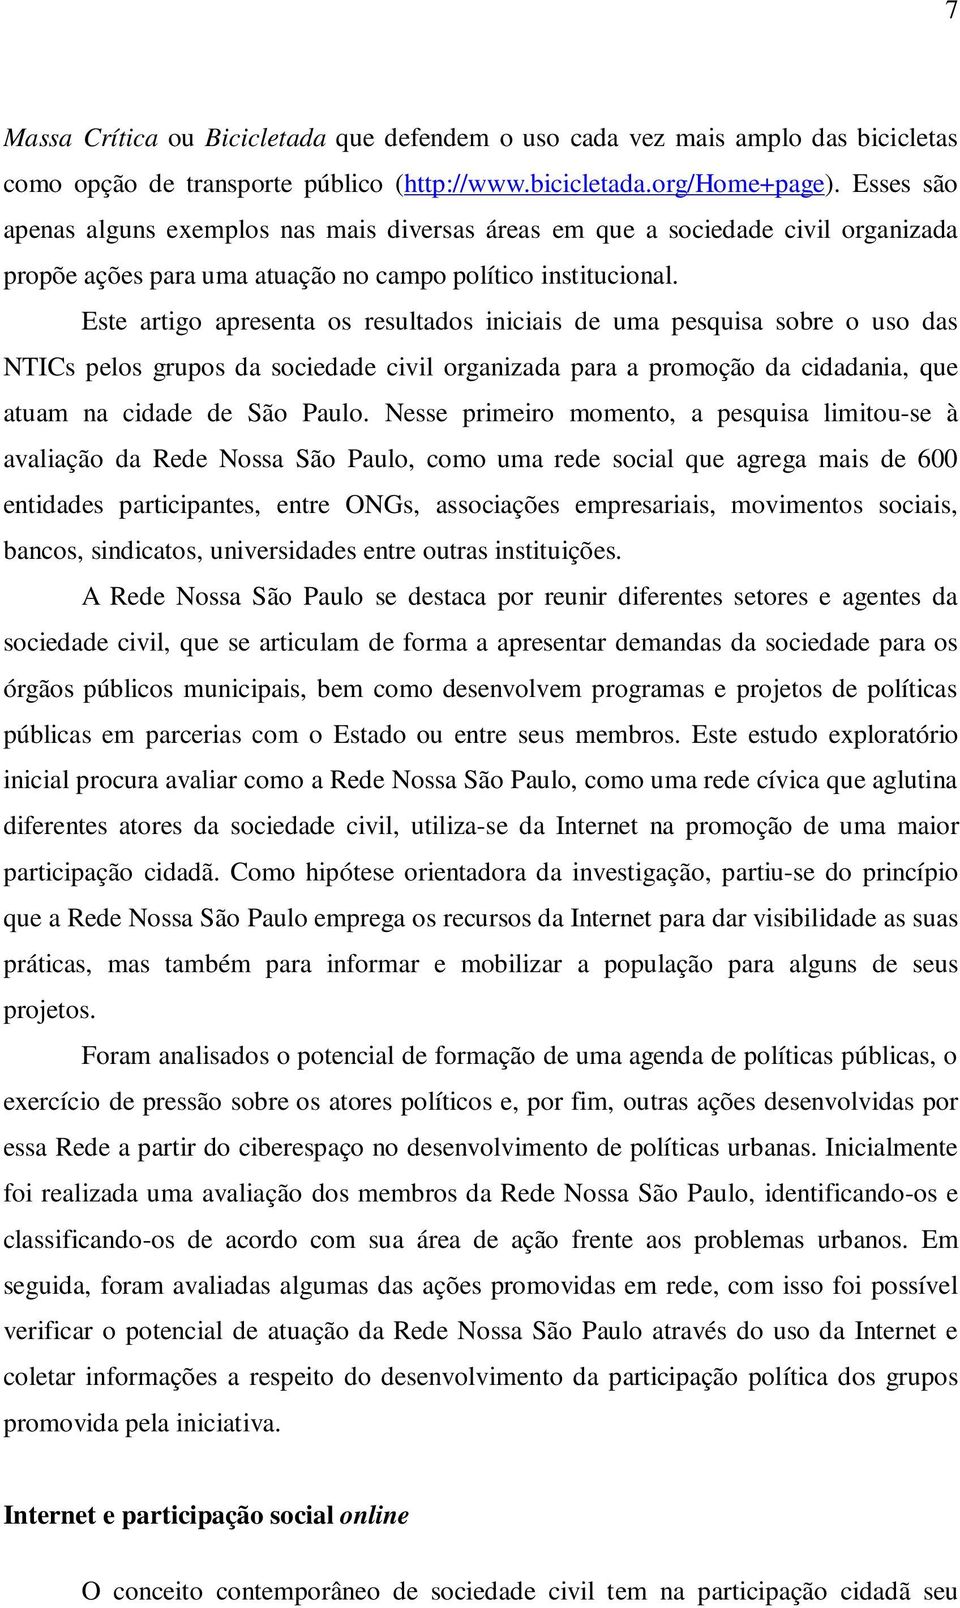 Este artigo apresenta os resultados iniciais de uma pesquisa sobre o uso das NTICs pelos grupos da sociedade civil organizada para a promoção da cidadania, que atuam na cidade de São Paulo.